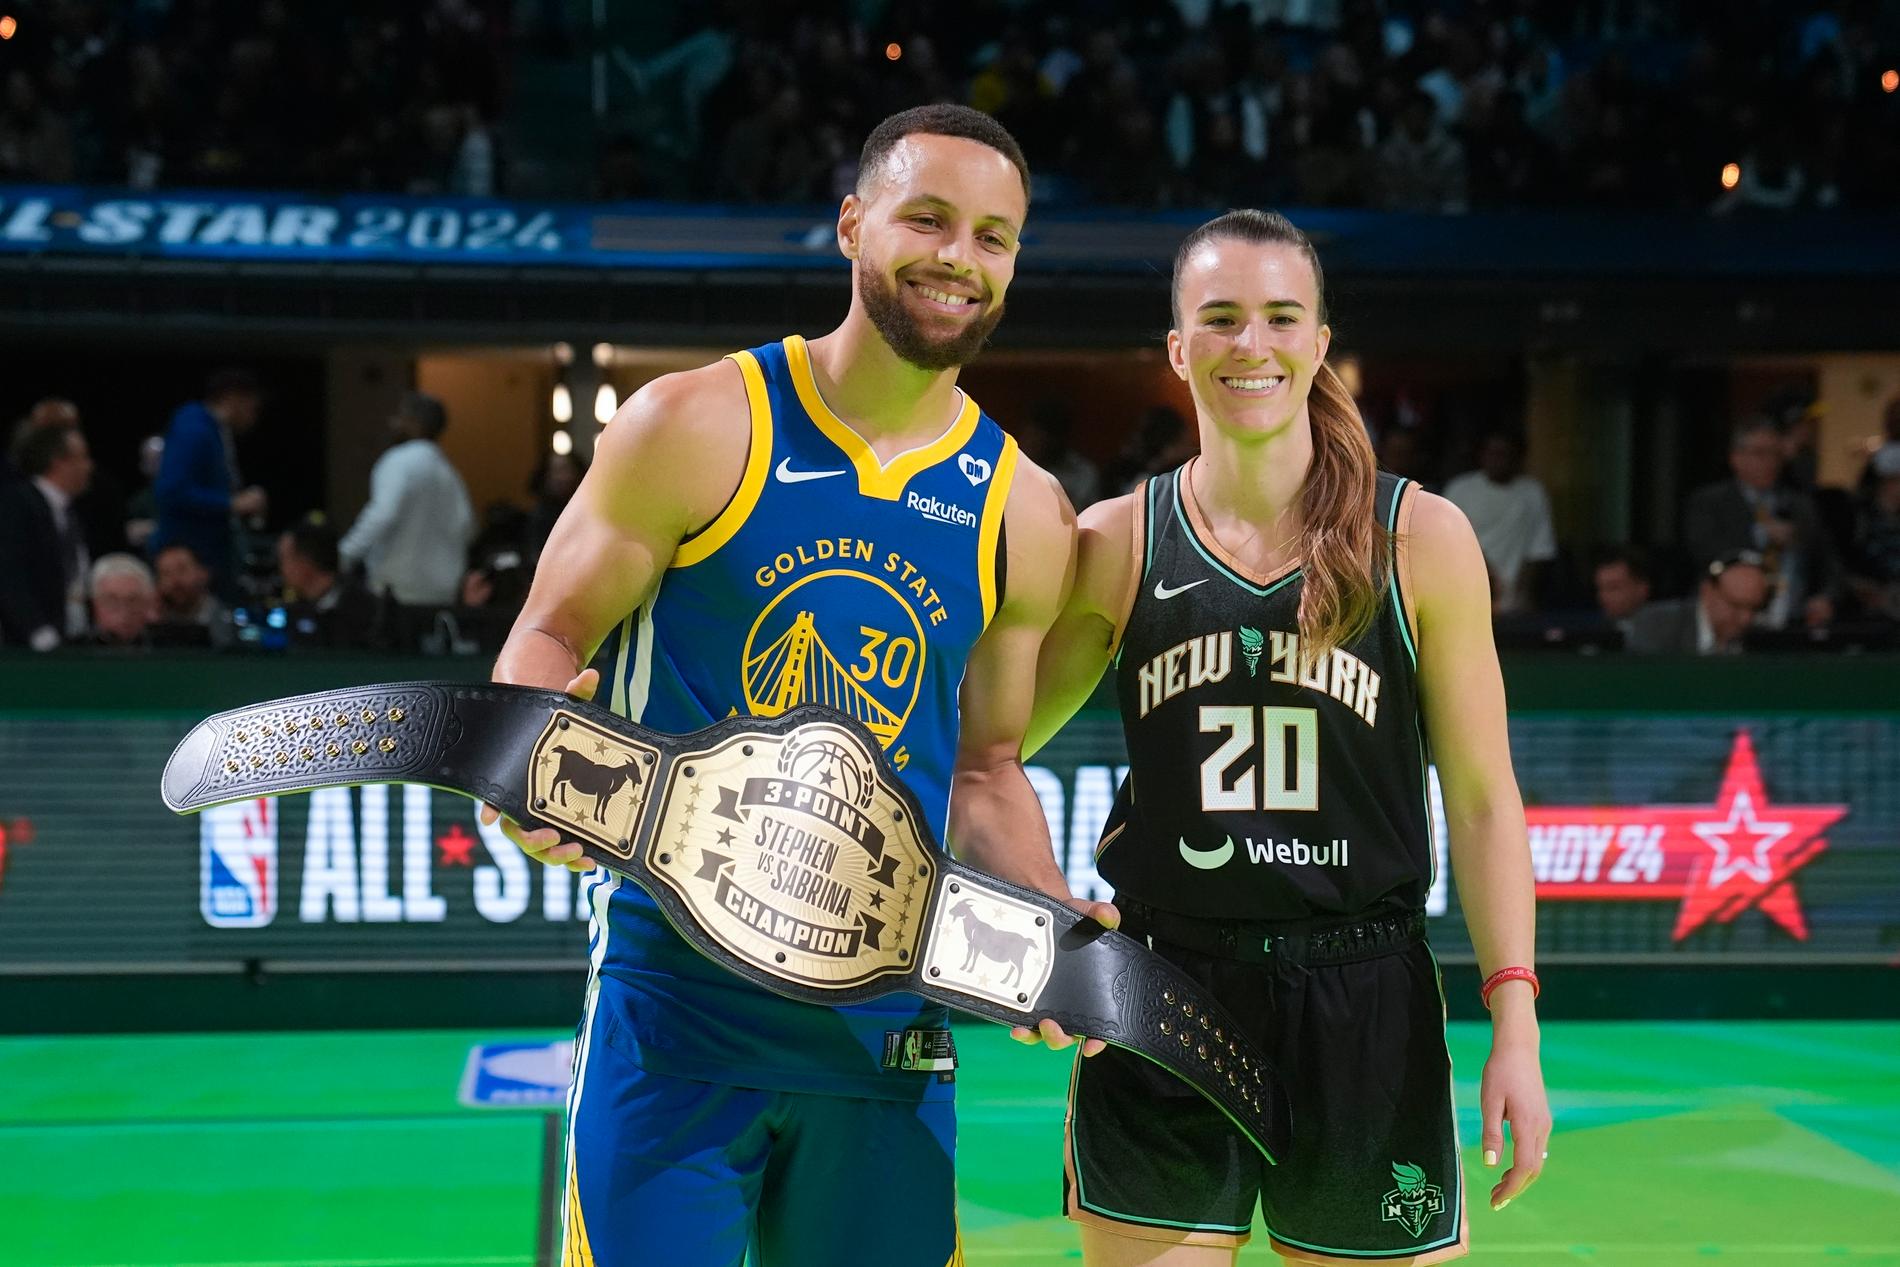 Stephen Curry vann mot Sabrina Ionescu i trepoängstävlingen under NBA:s all star-helgen.